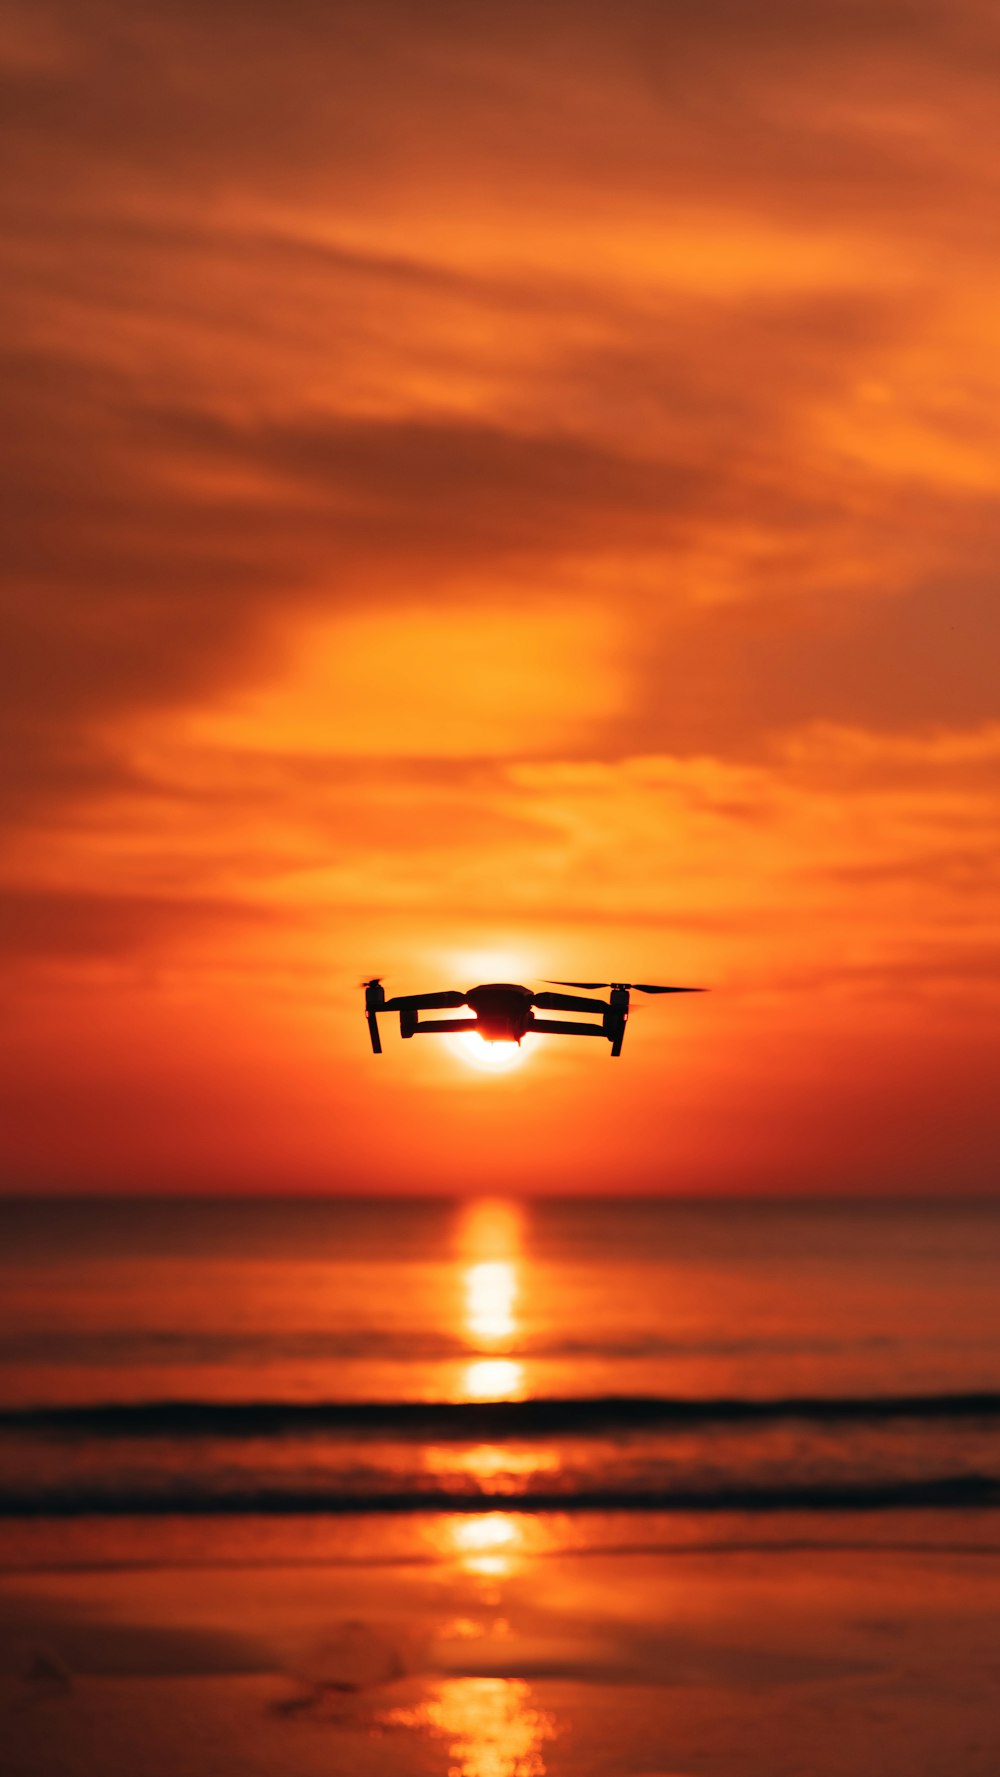 Ein Flugzeug, das bei Sonnenuntergang über den Ozean fliegt